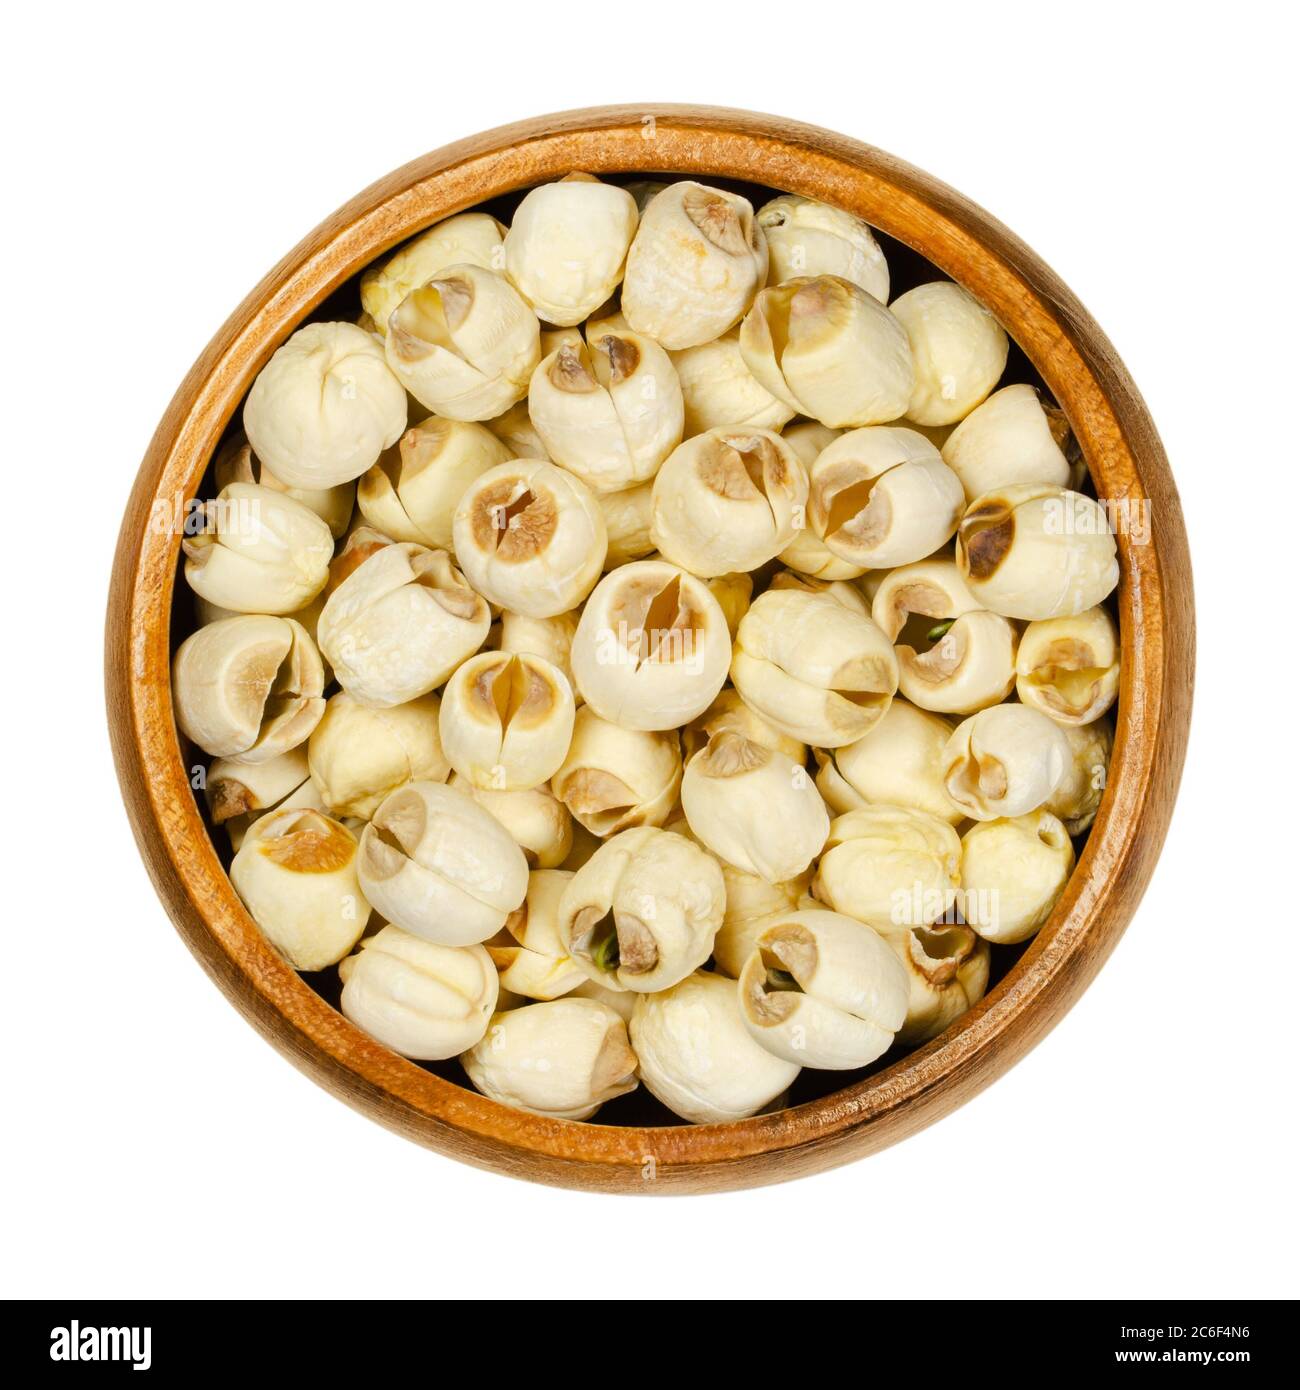 Frutta secca di loto sgusciata bianca in una ciotola di legno. Semi commestibili di loto indiano. Nelumbo nucifera, conosciuto anche come loto sacro, fagiolo dell'India. Foto Stock